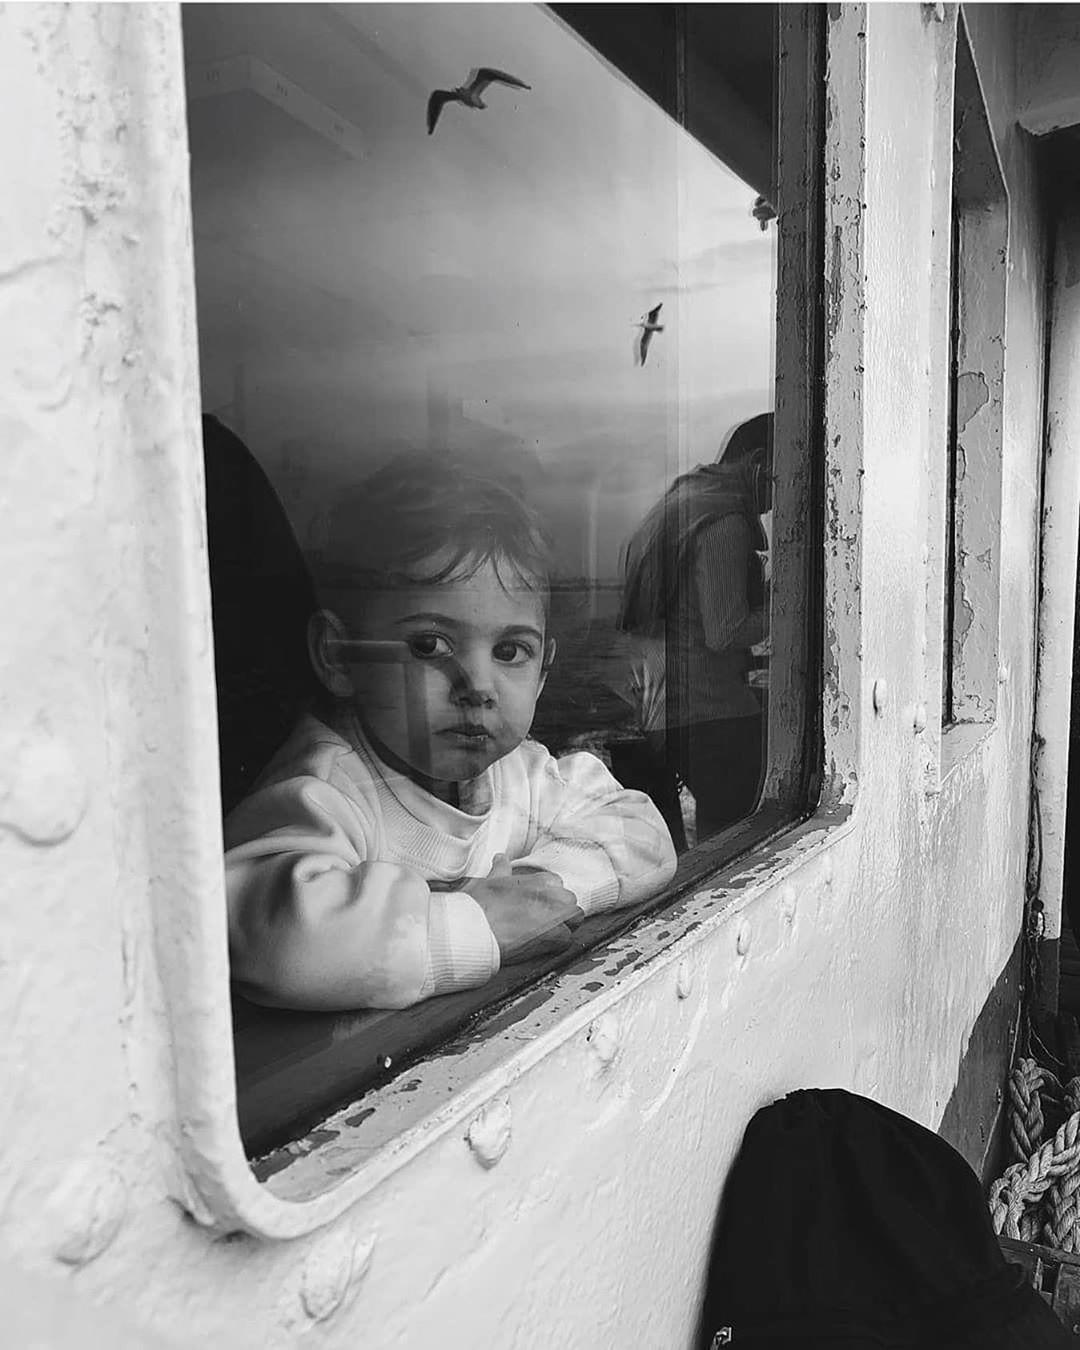  窗前的孩子，来自摄影师Bige Onal。 